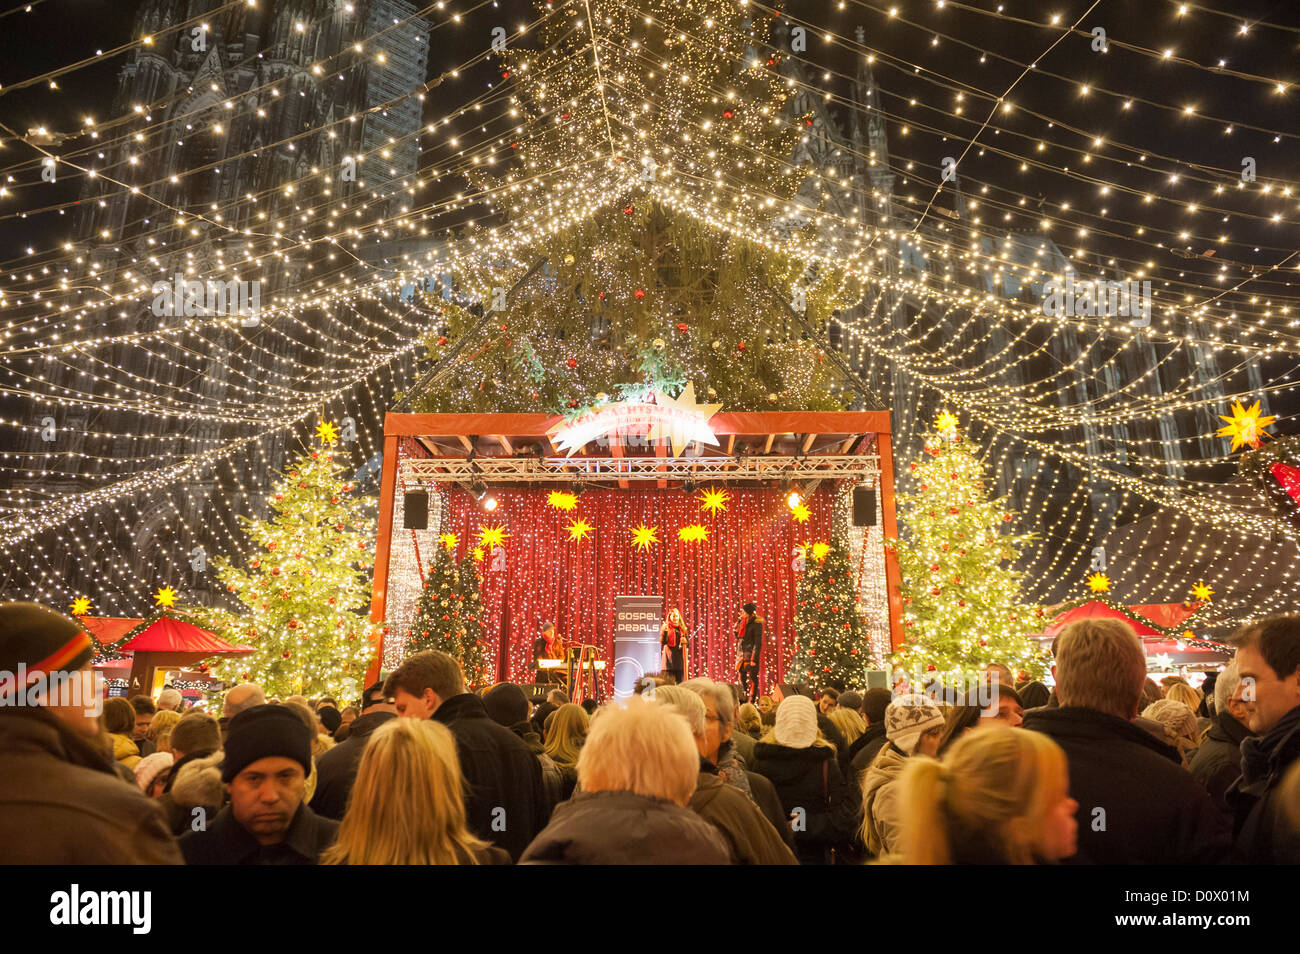 Occupato Cologne Christmas Market in corrispondenza di notte la cattedrale in inverno in Germania Foto Stock